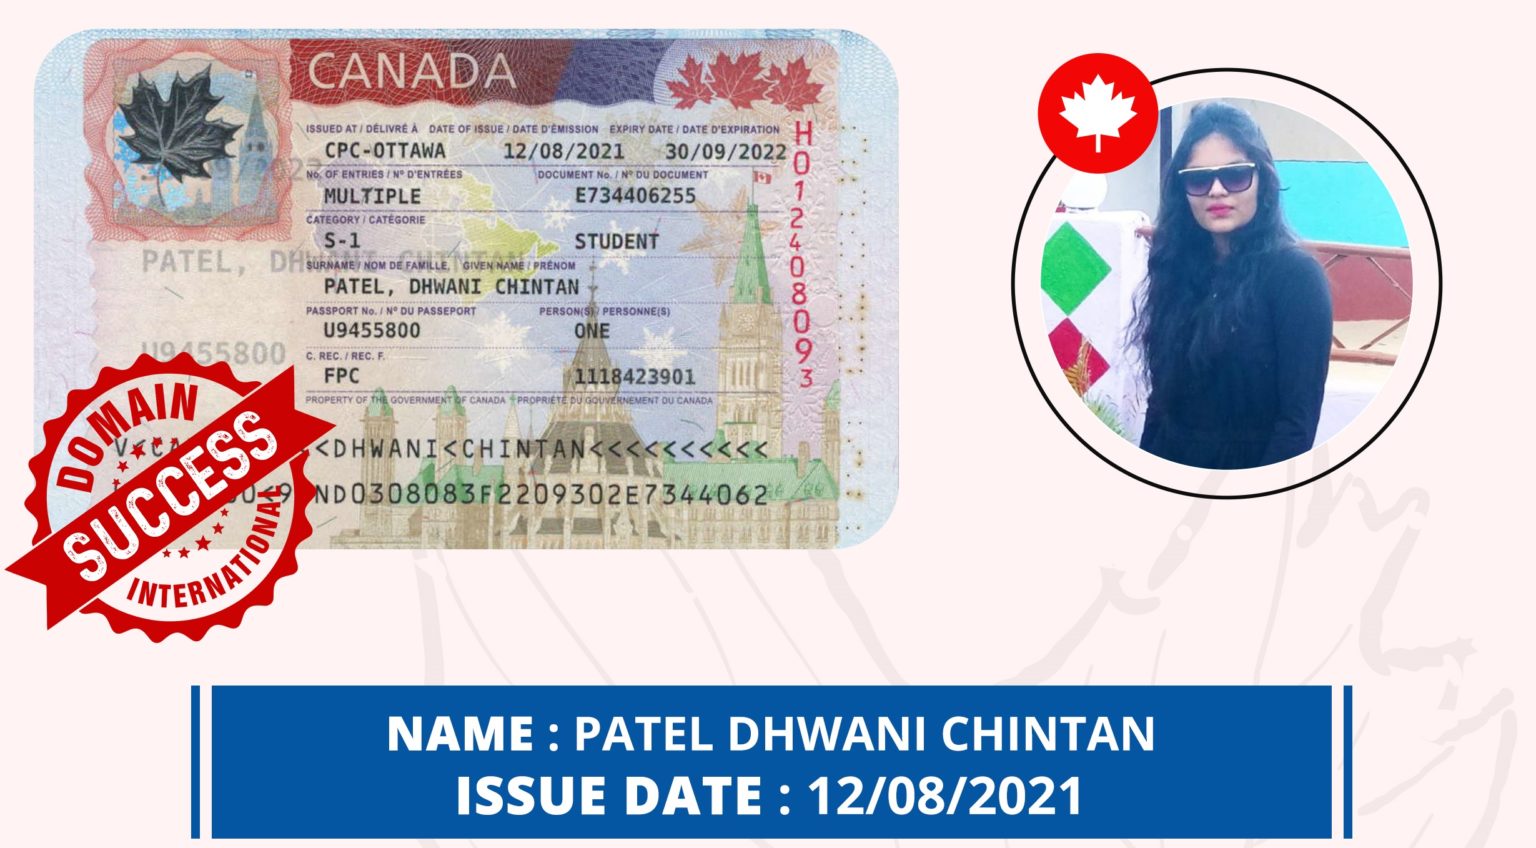 Canada-Visa-7-1536x848